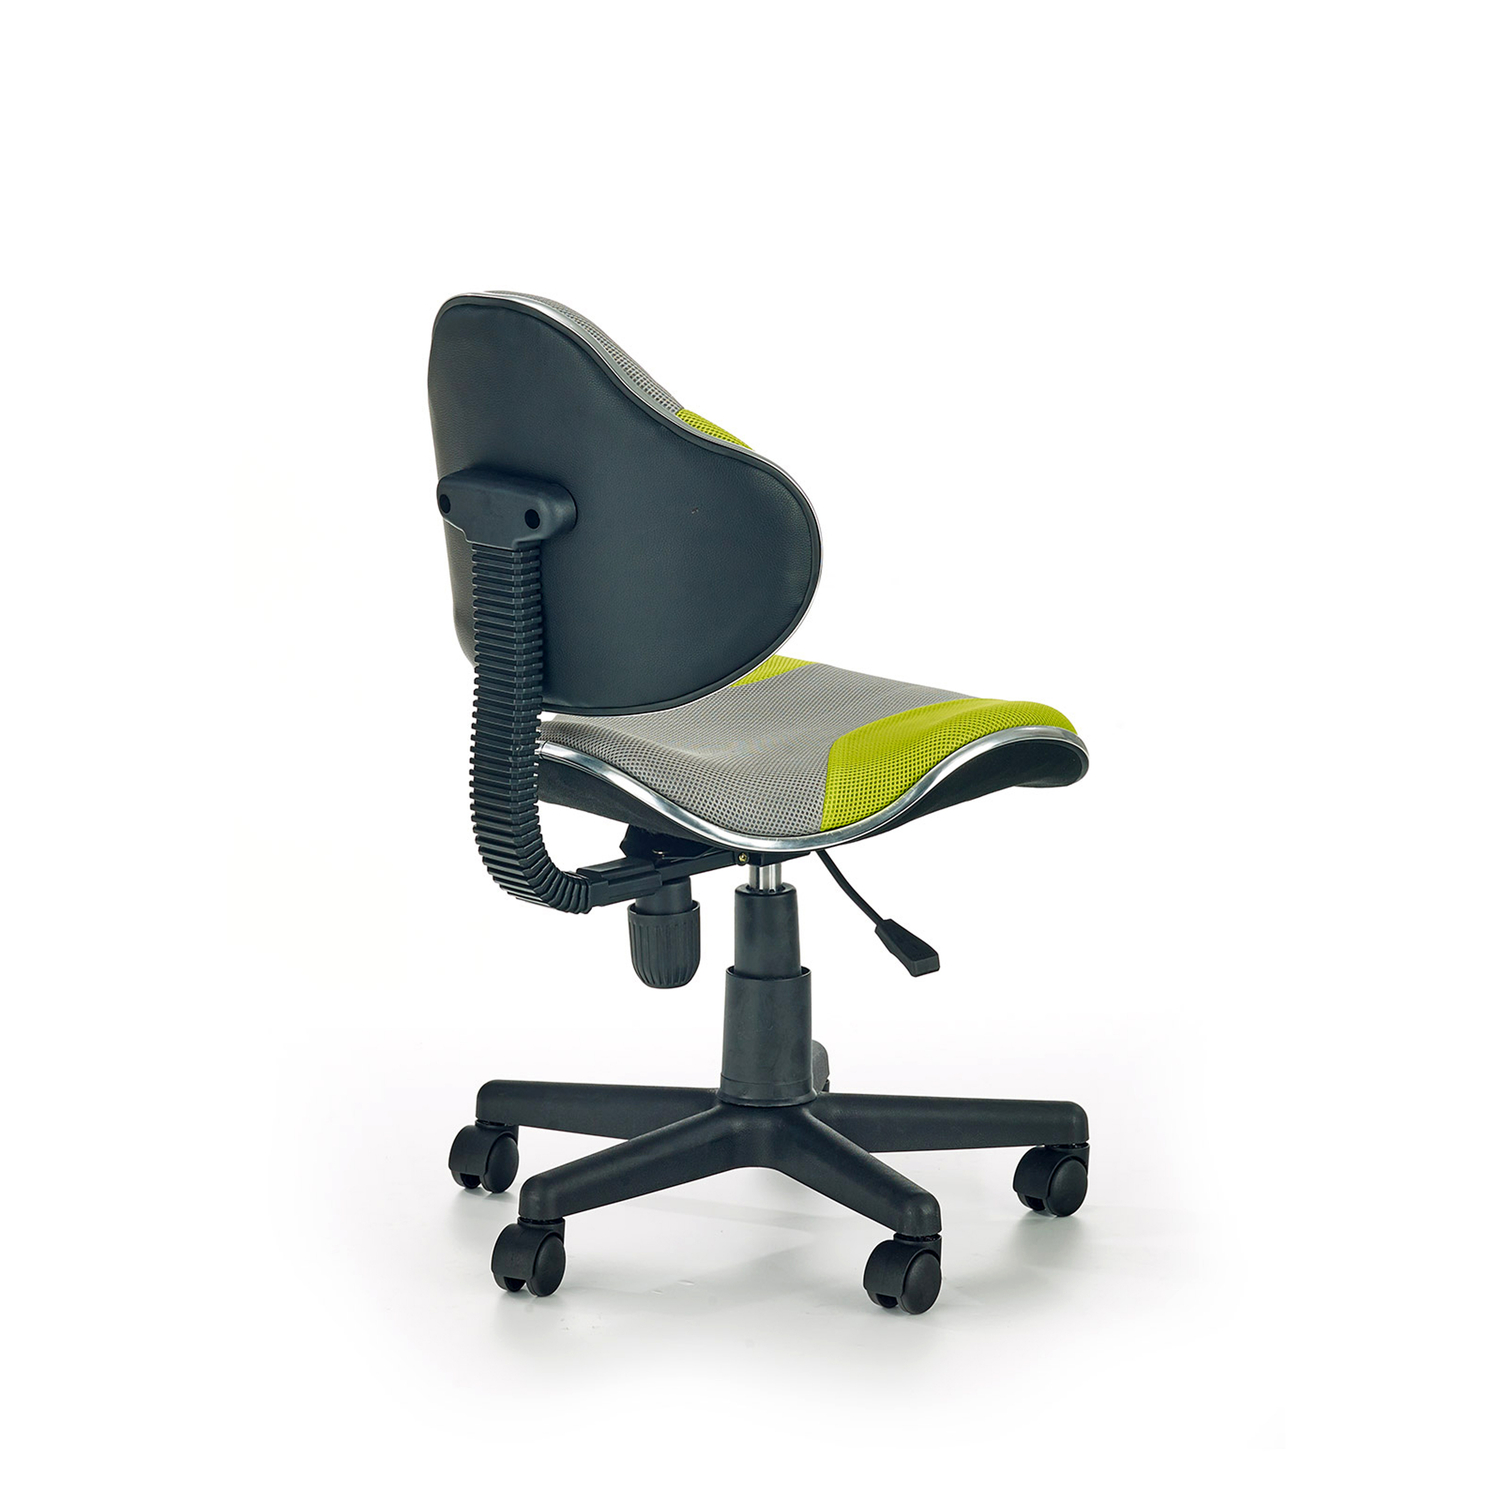 Кресло flash. Кресло компьютерное Halmar Flash 2 серо-зеленый/черный. Кресло детское Halmar Pure. Компьютерный стул Halmar barvo c-6. Компьютерный стул Halmar barvo.